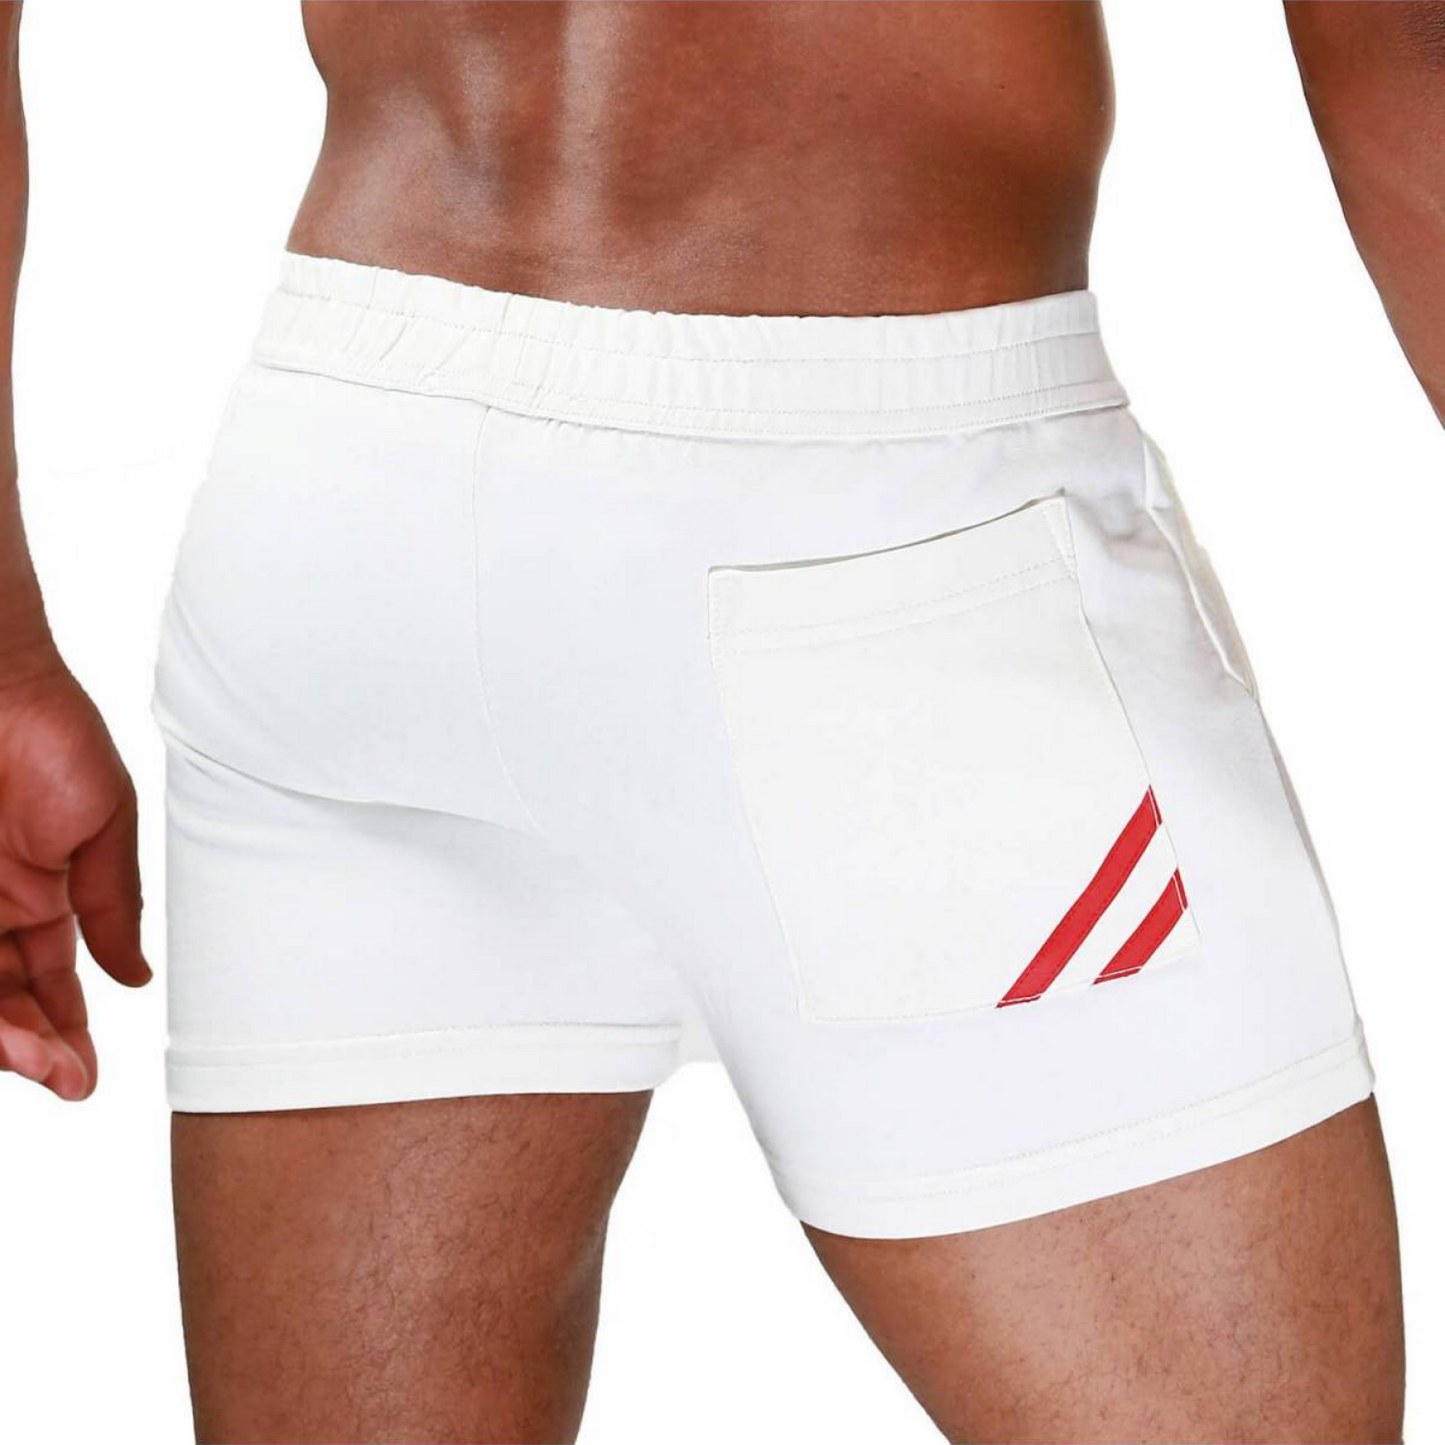 Witte korte broek met 2 rode strepen. Geschikt voor de dansvloer, Sport en Vakantie! Ontworpen door Tof Paris. Te koop bij Flavourez.